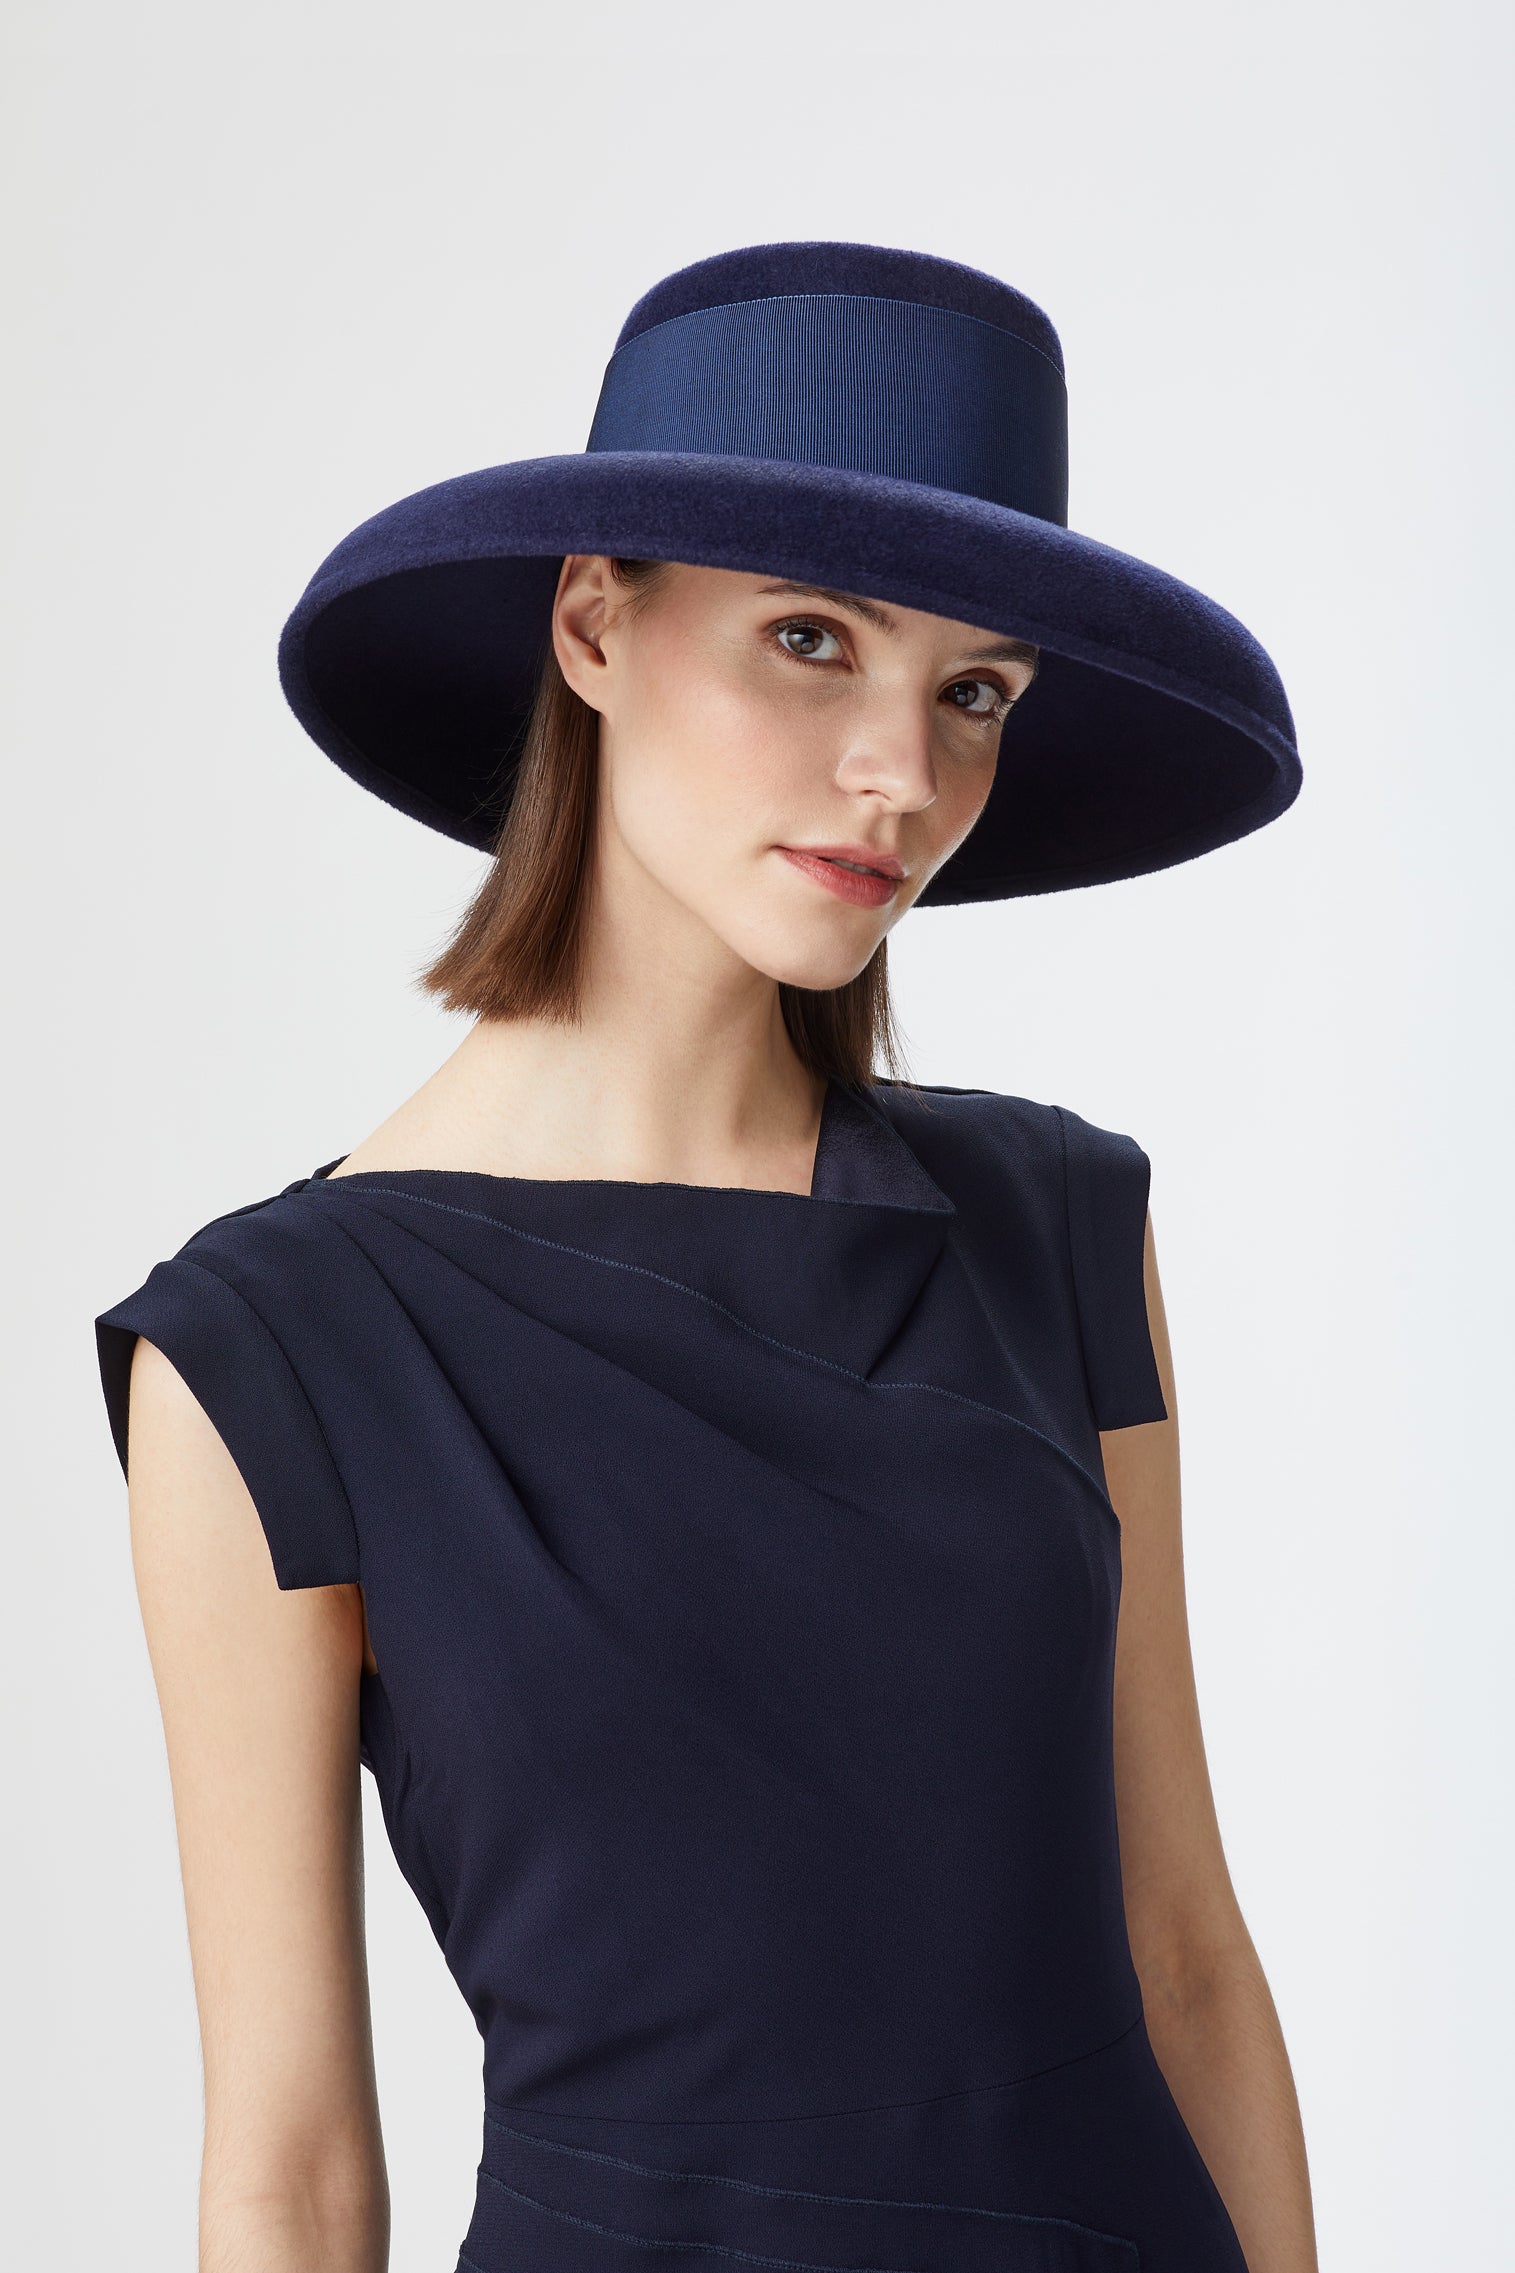 Tiffany Drop-Brim Hat - Women’s Hats - Lock & Co. Hatters London UK